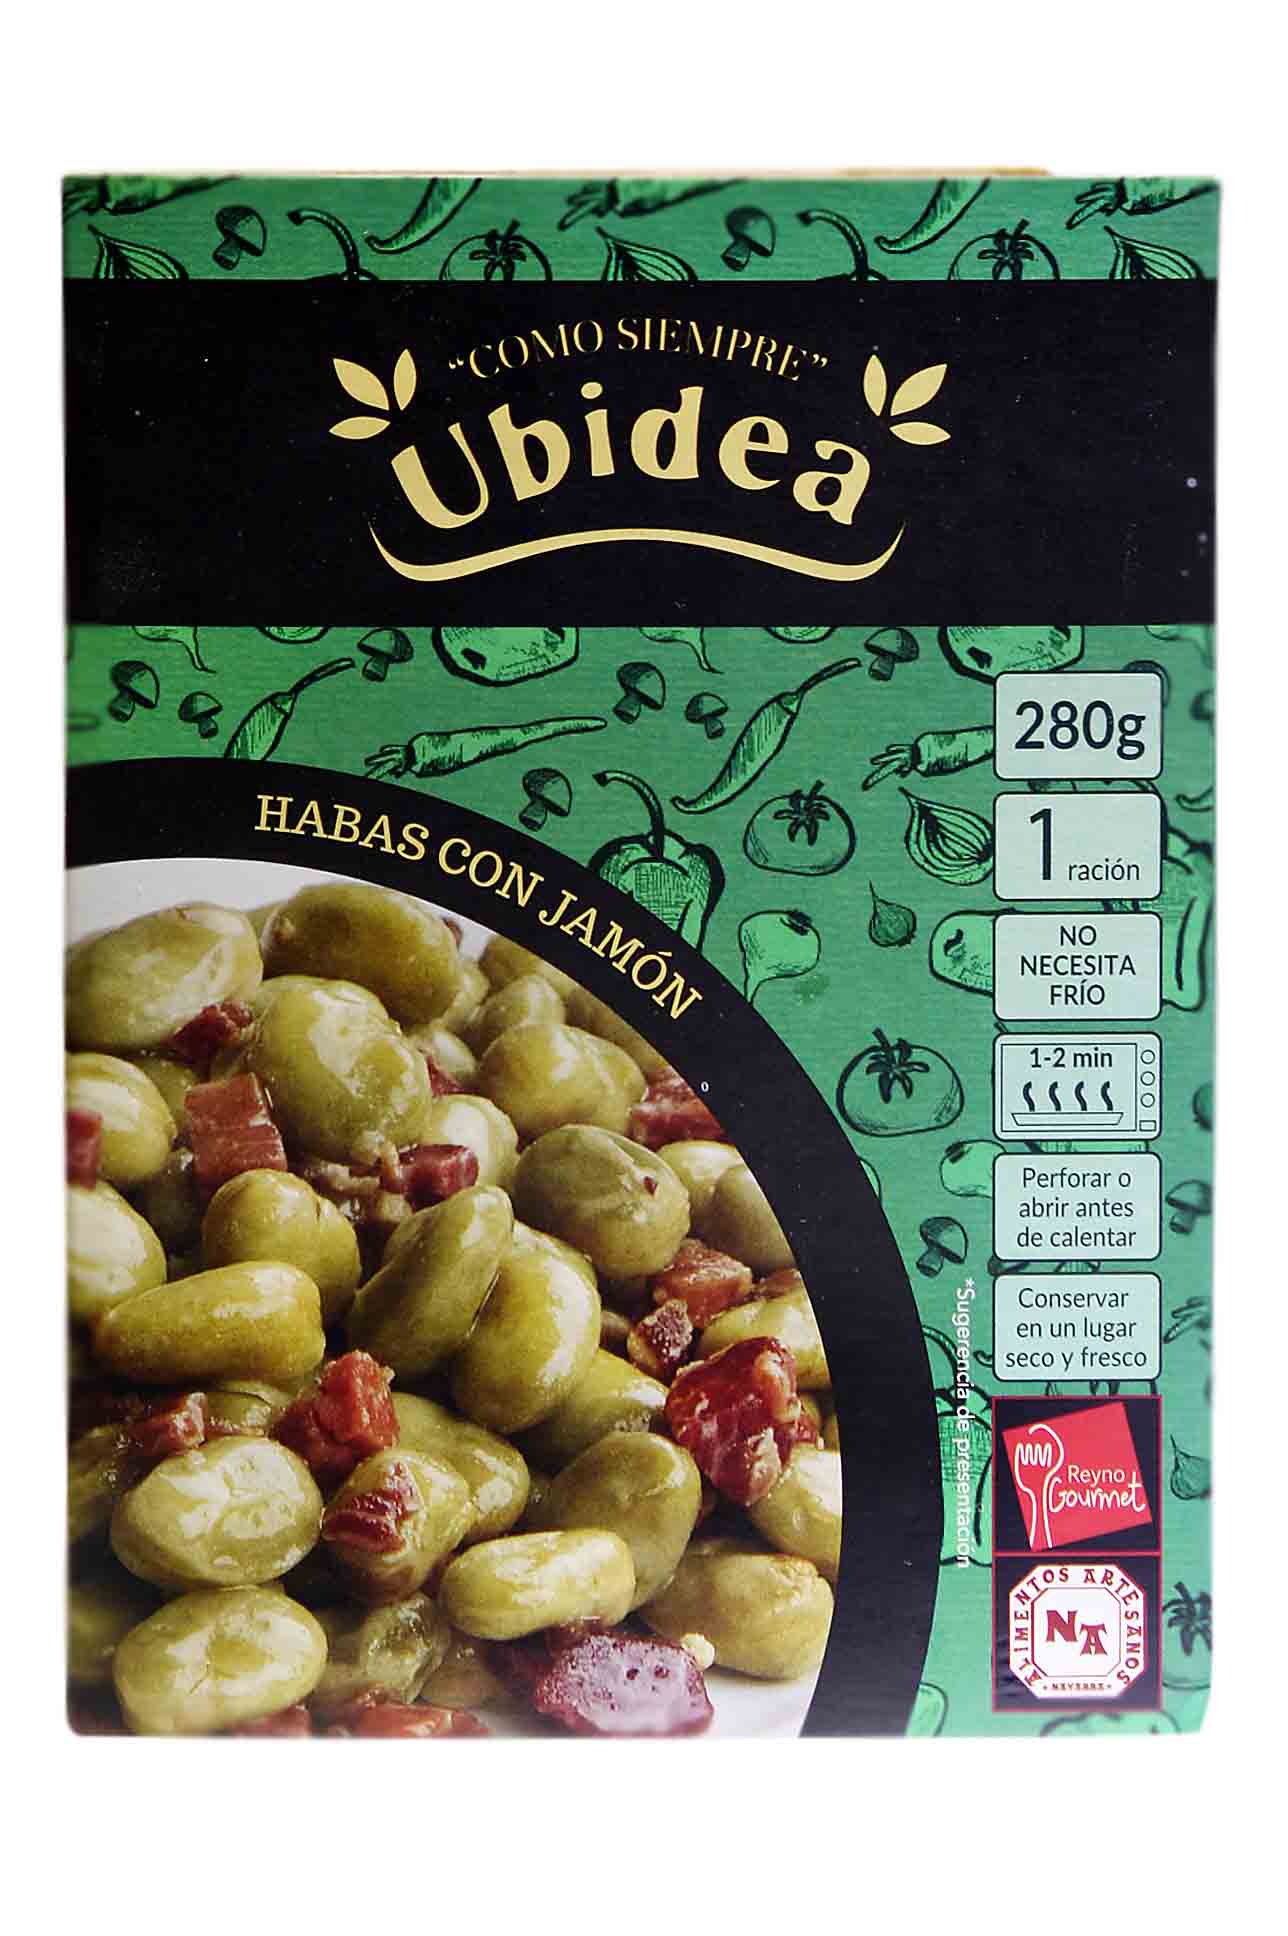 Ubidea CV54-Beans with ham